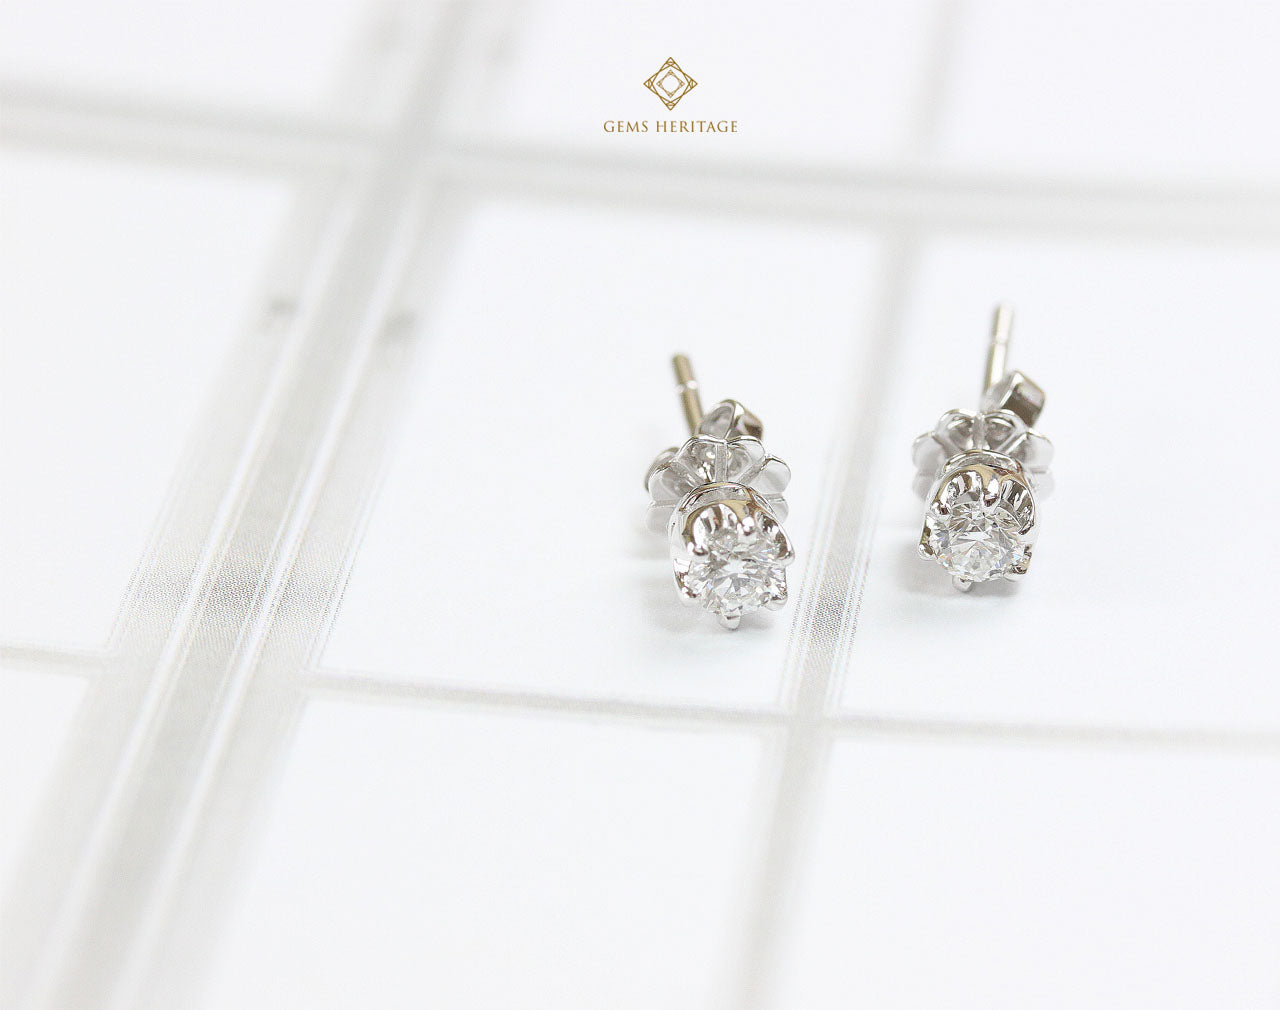 Diamond Stud earrings 0.20 cts each